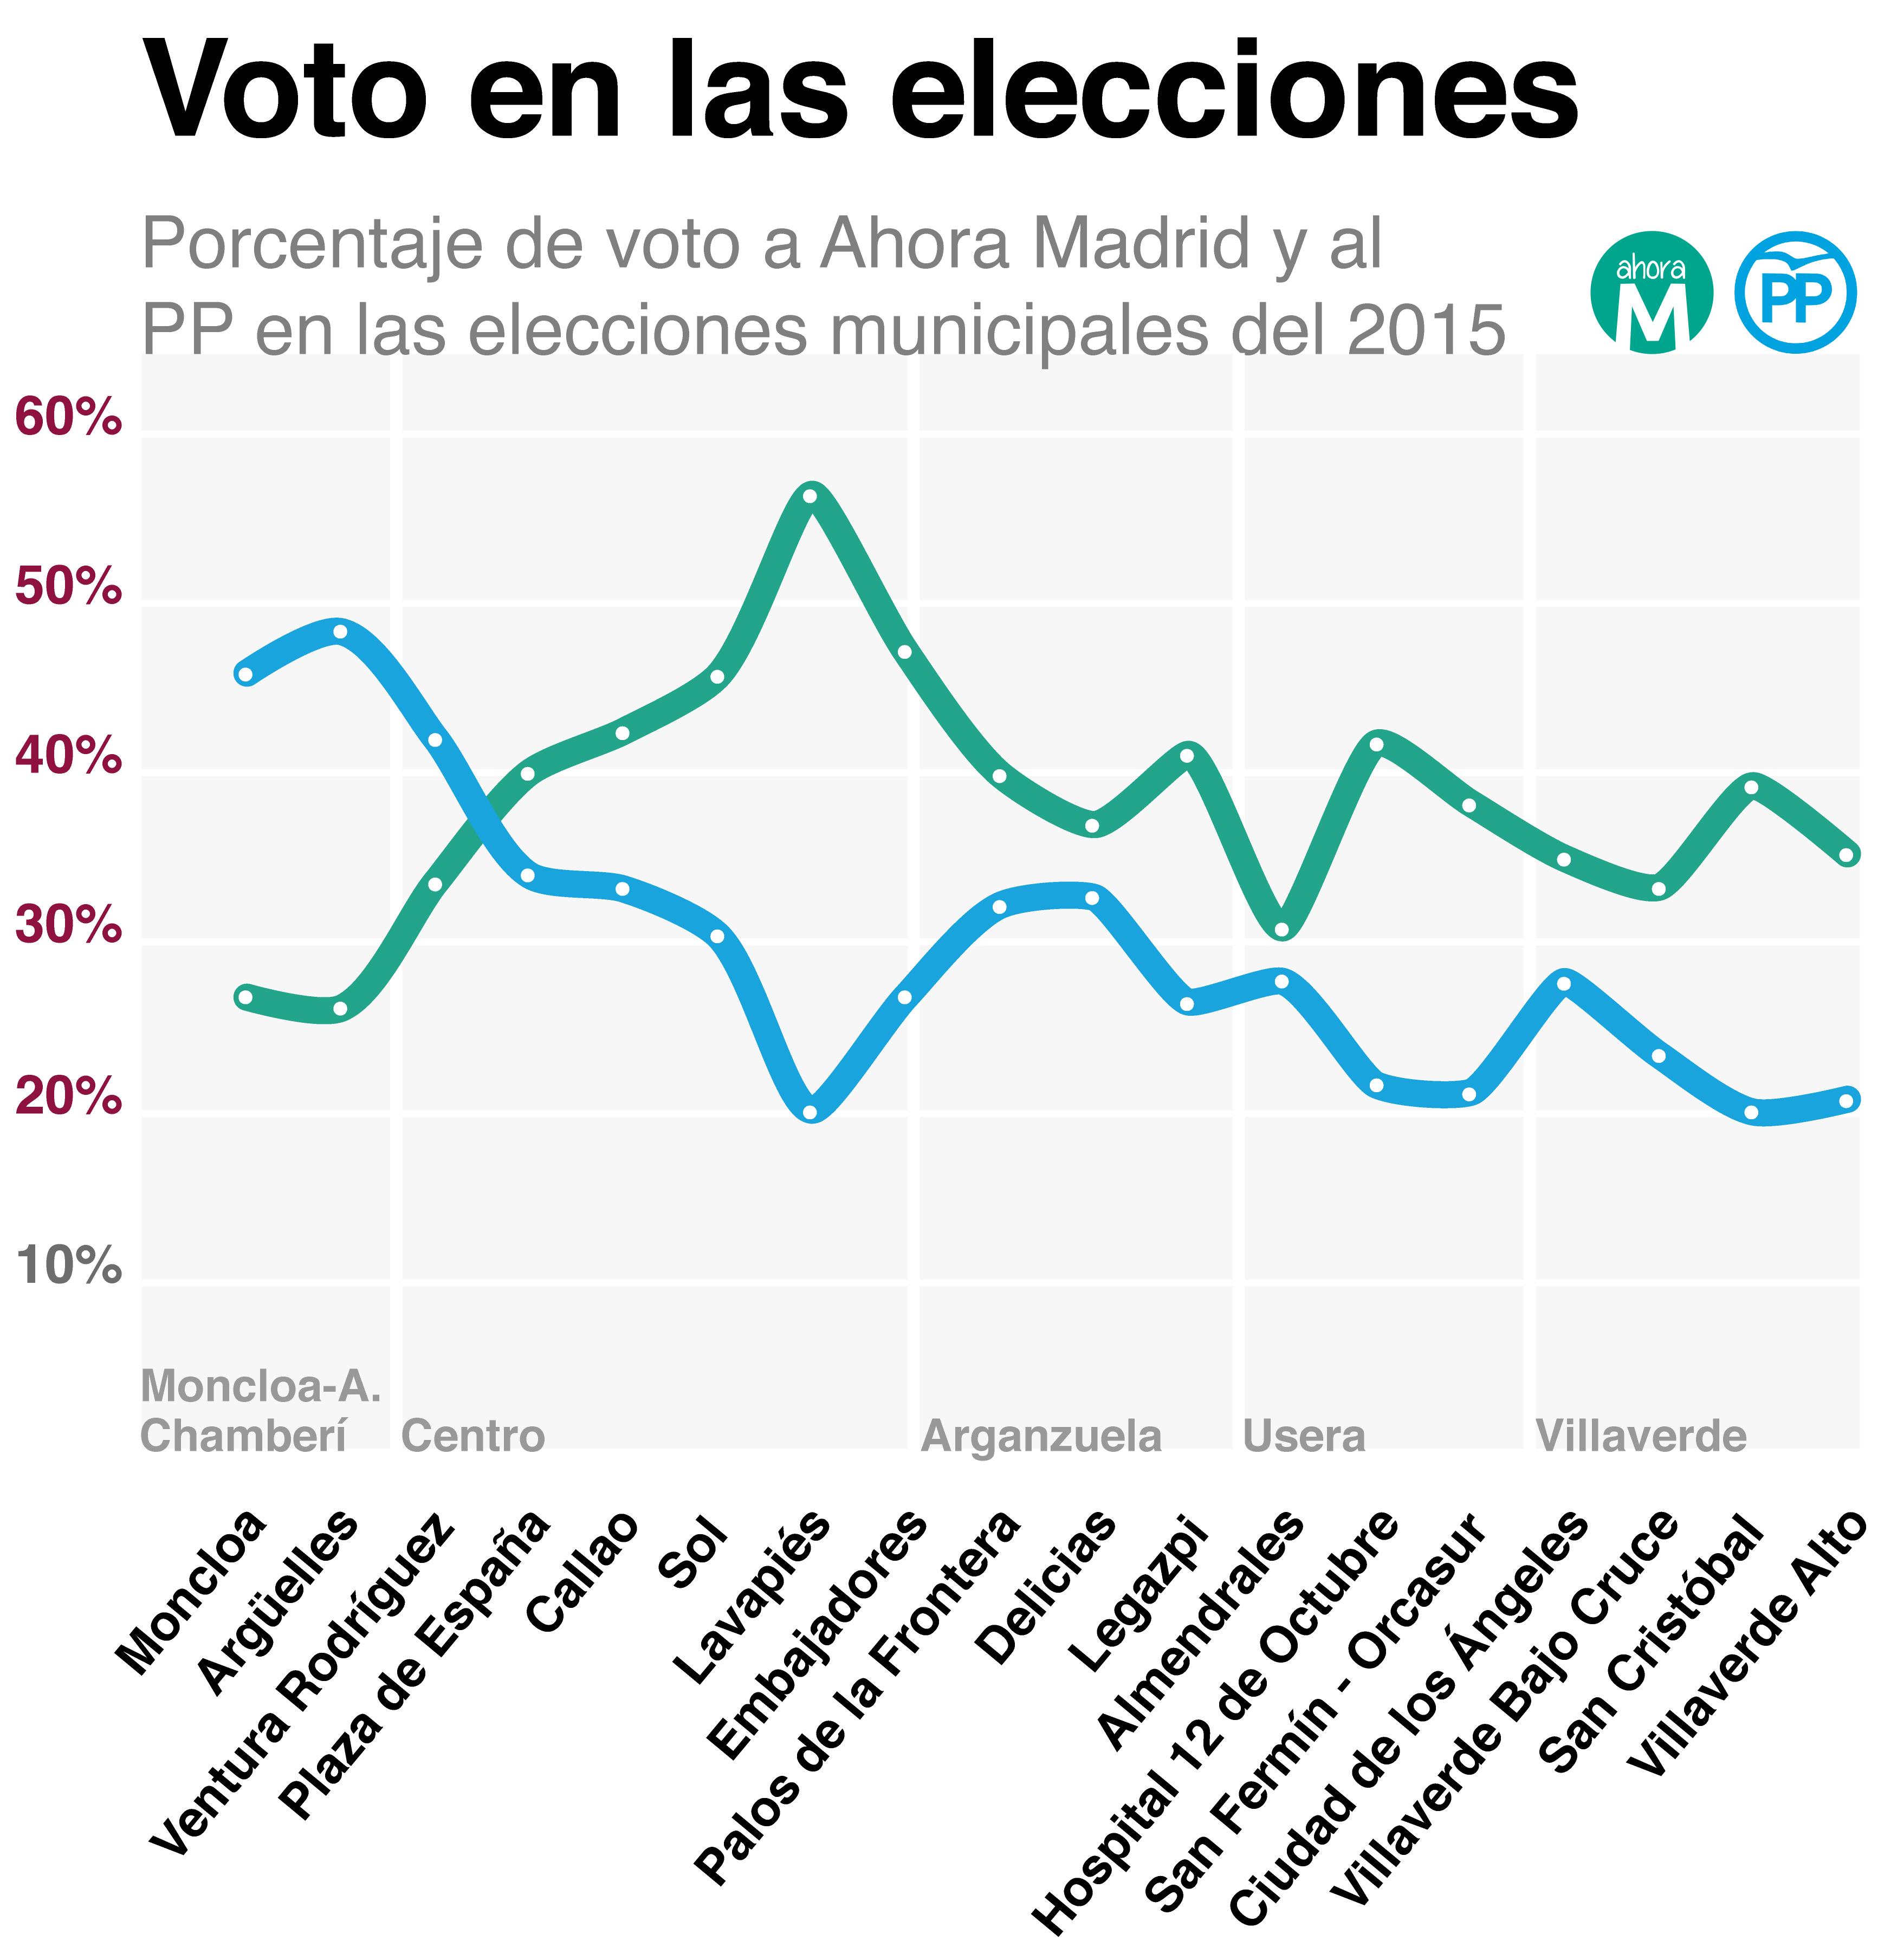 Gráfico con el porcentaje de voto a Ahora Madrid y al Partido Popular en las elecciones autonómicas del 2015